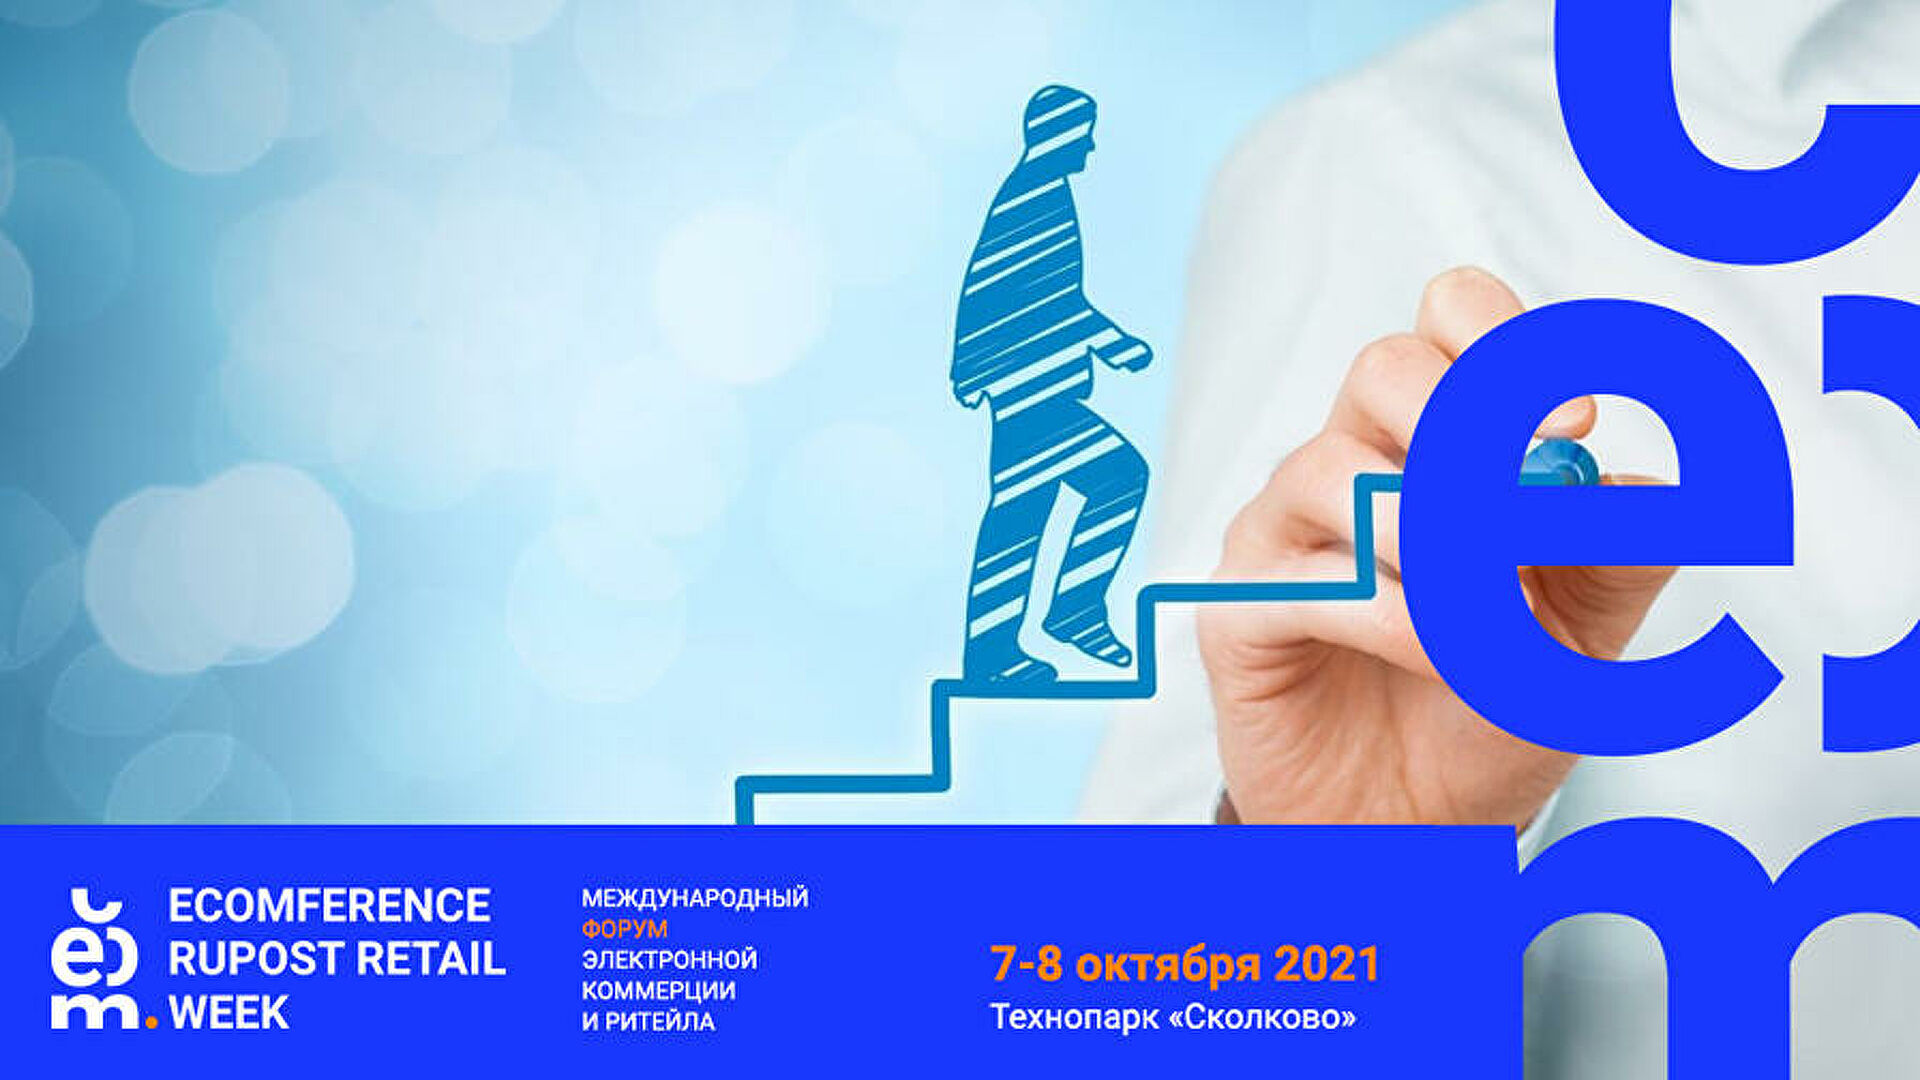 В начале октября пройдет международный форум «Ecomference Rupost Retail Week»